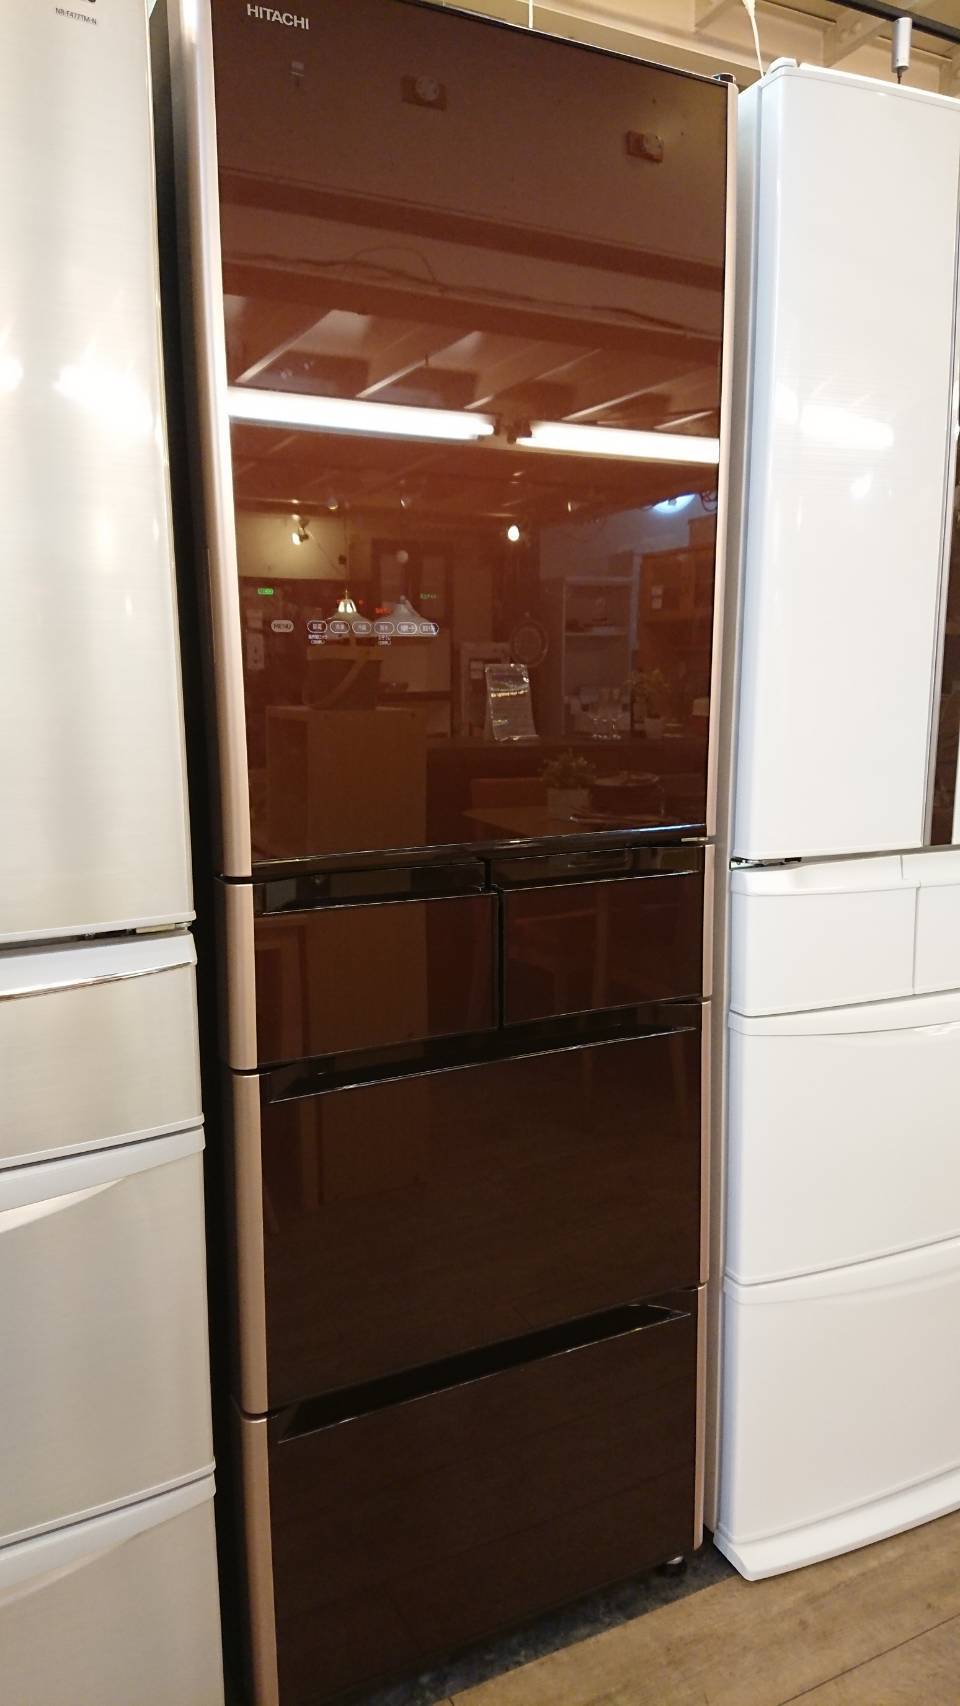 冷蔵庫(日立)401L - キッチン家電